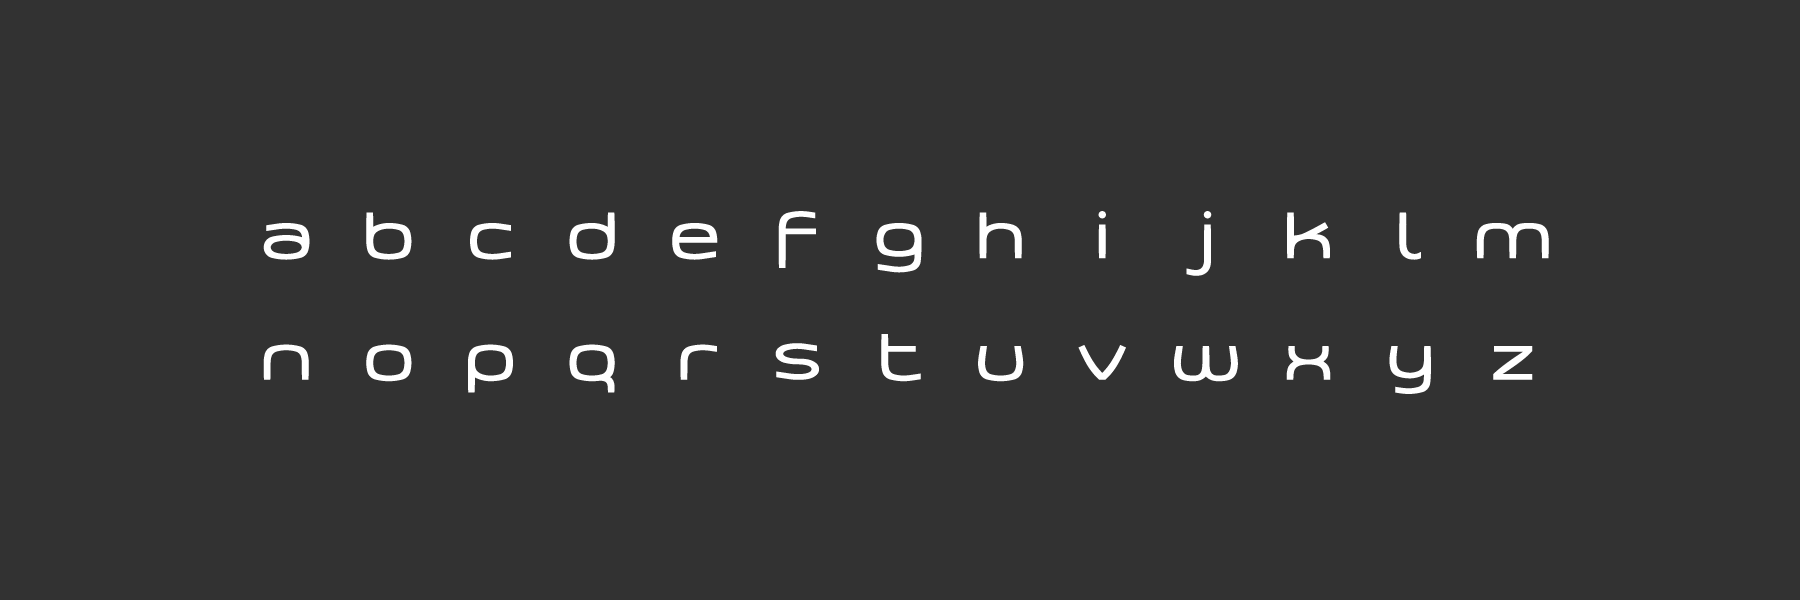 Alfabeto completo de la tipografía de la marca Emagister